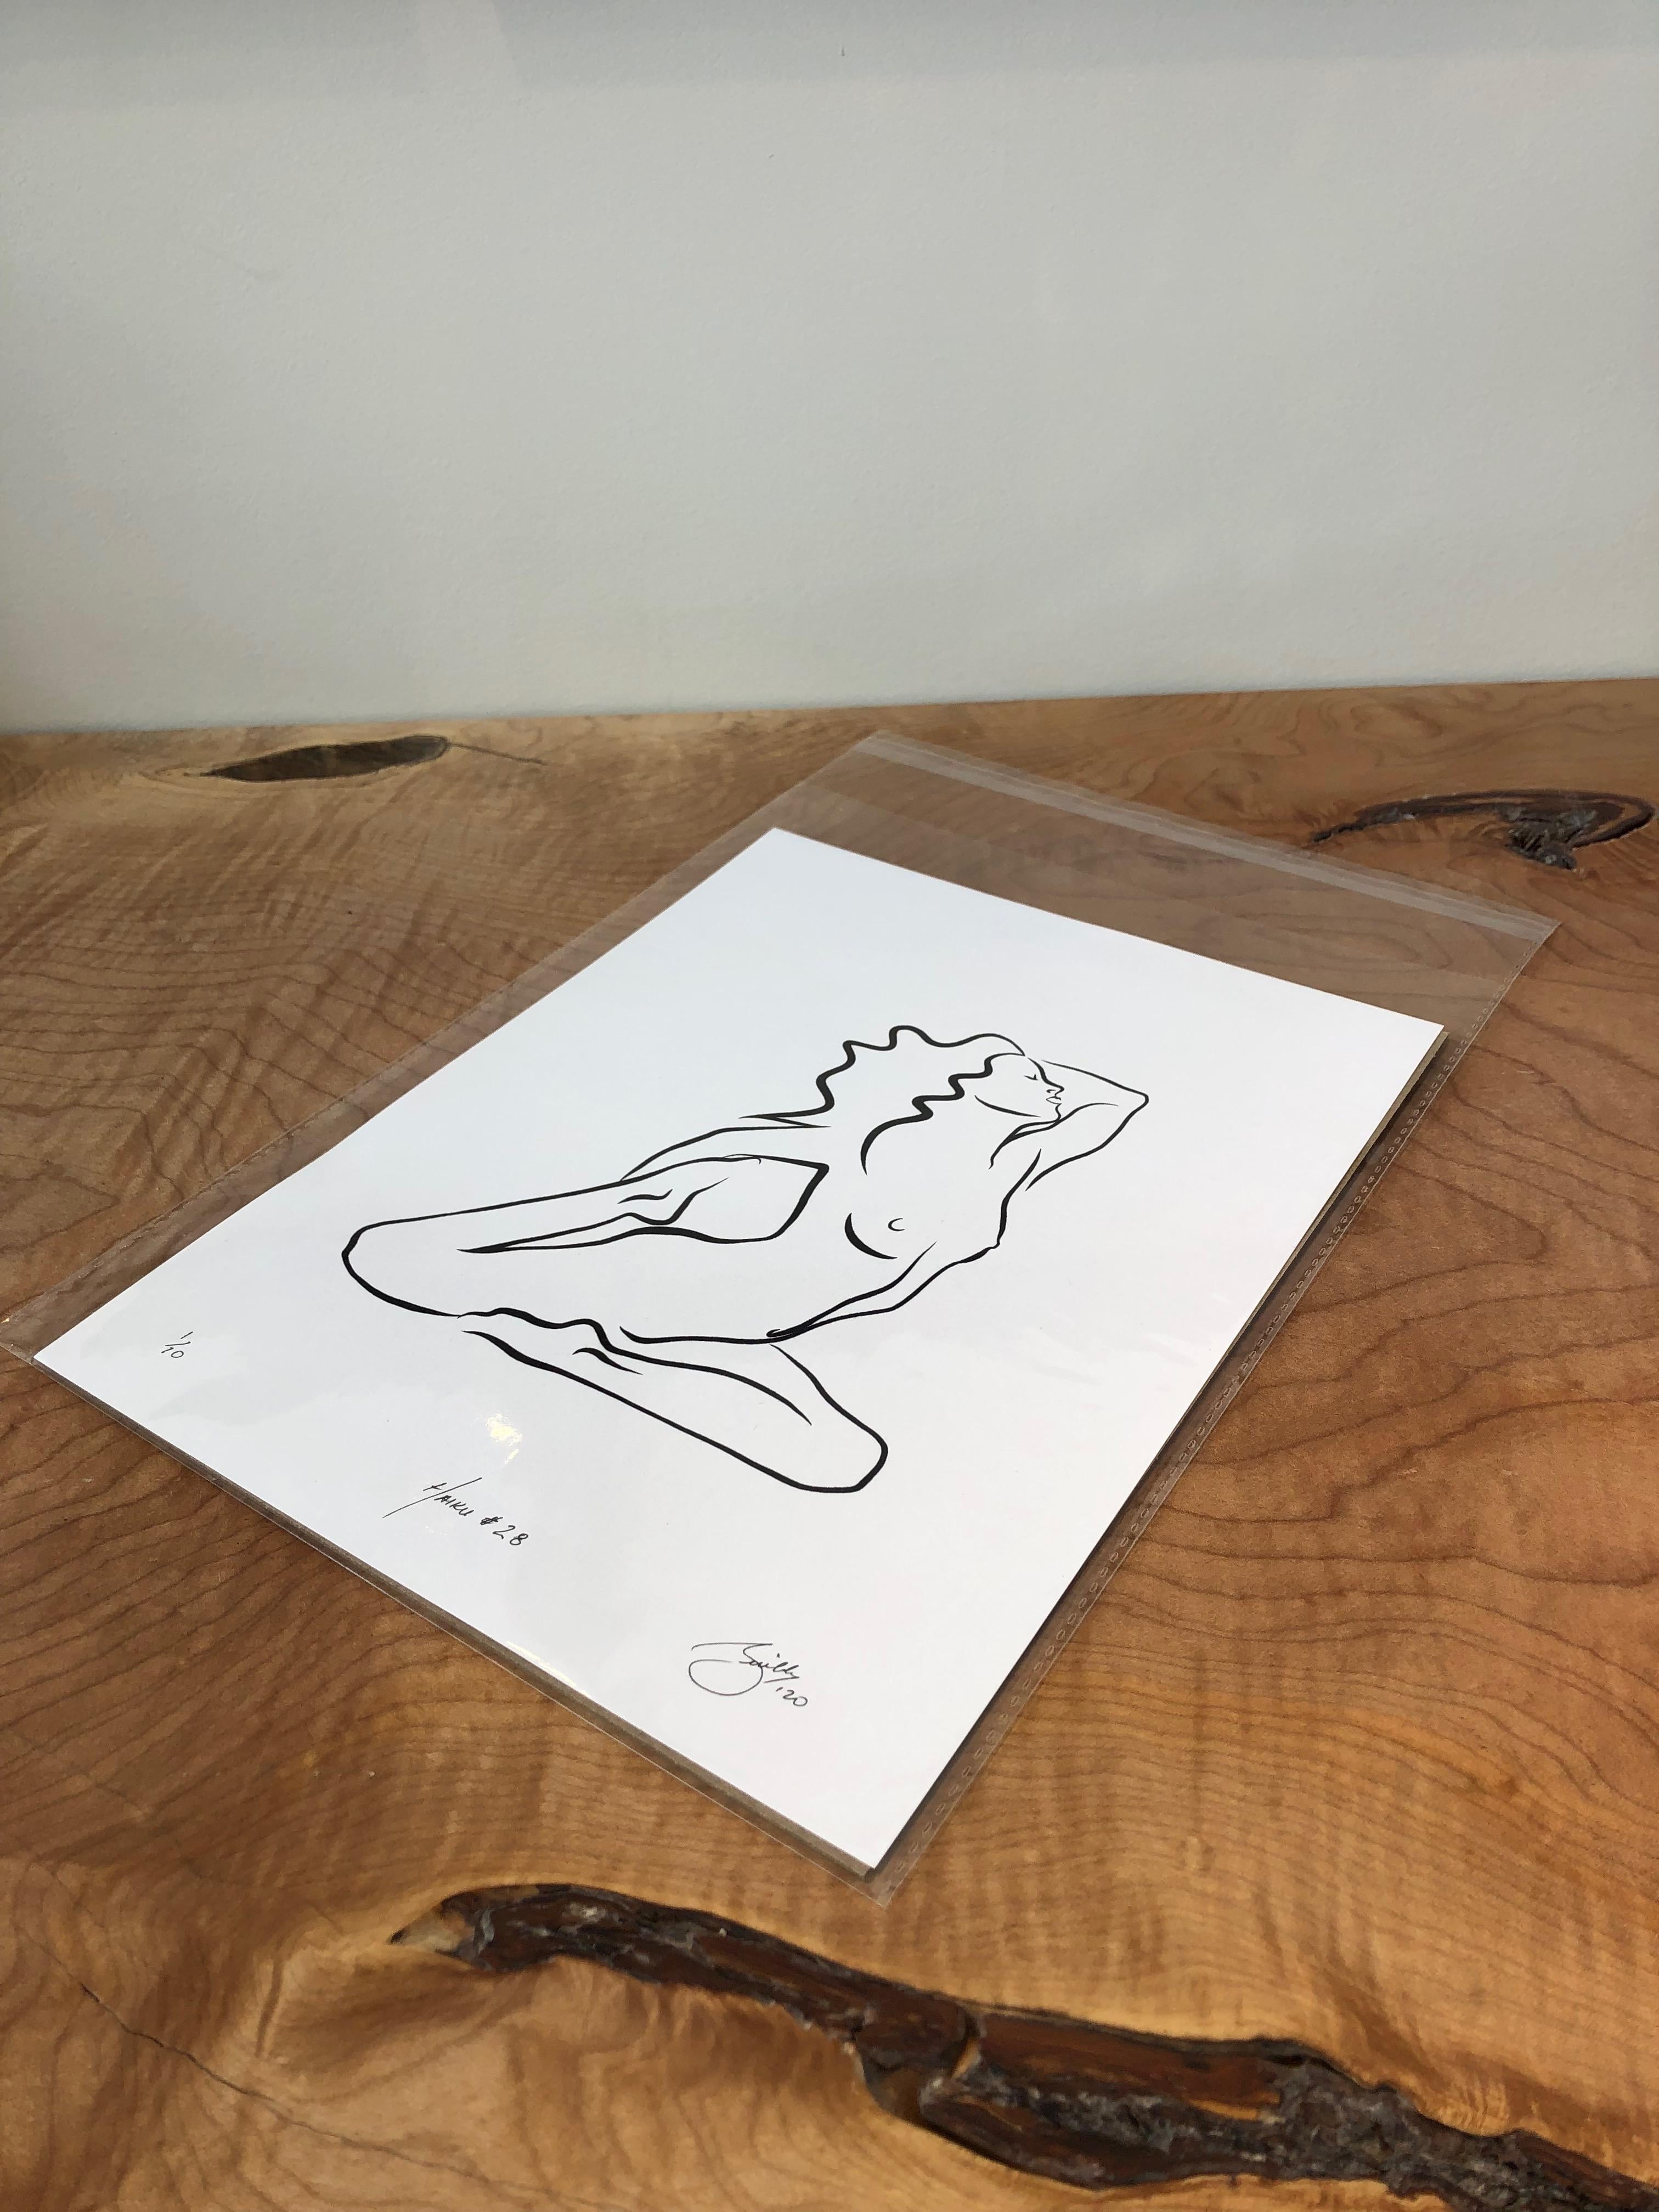 Haiku #28 - Digital Vector Drawing Kneeling Female Nude Woman Figure - Contemporary Art by Michael Binkley